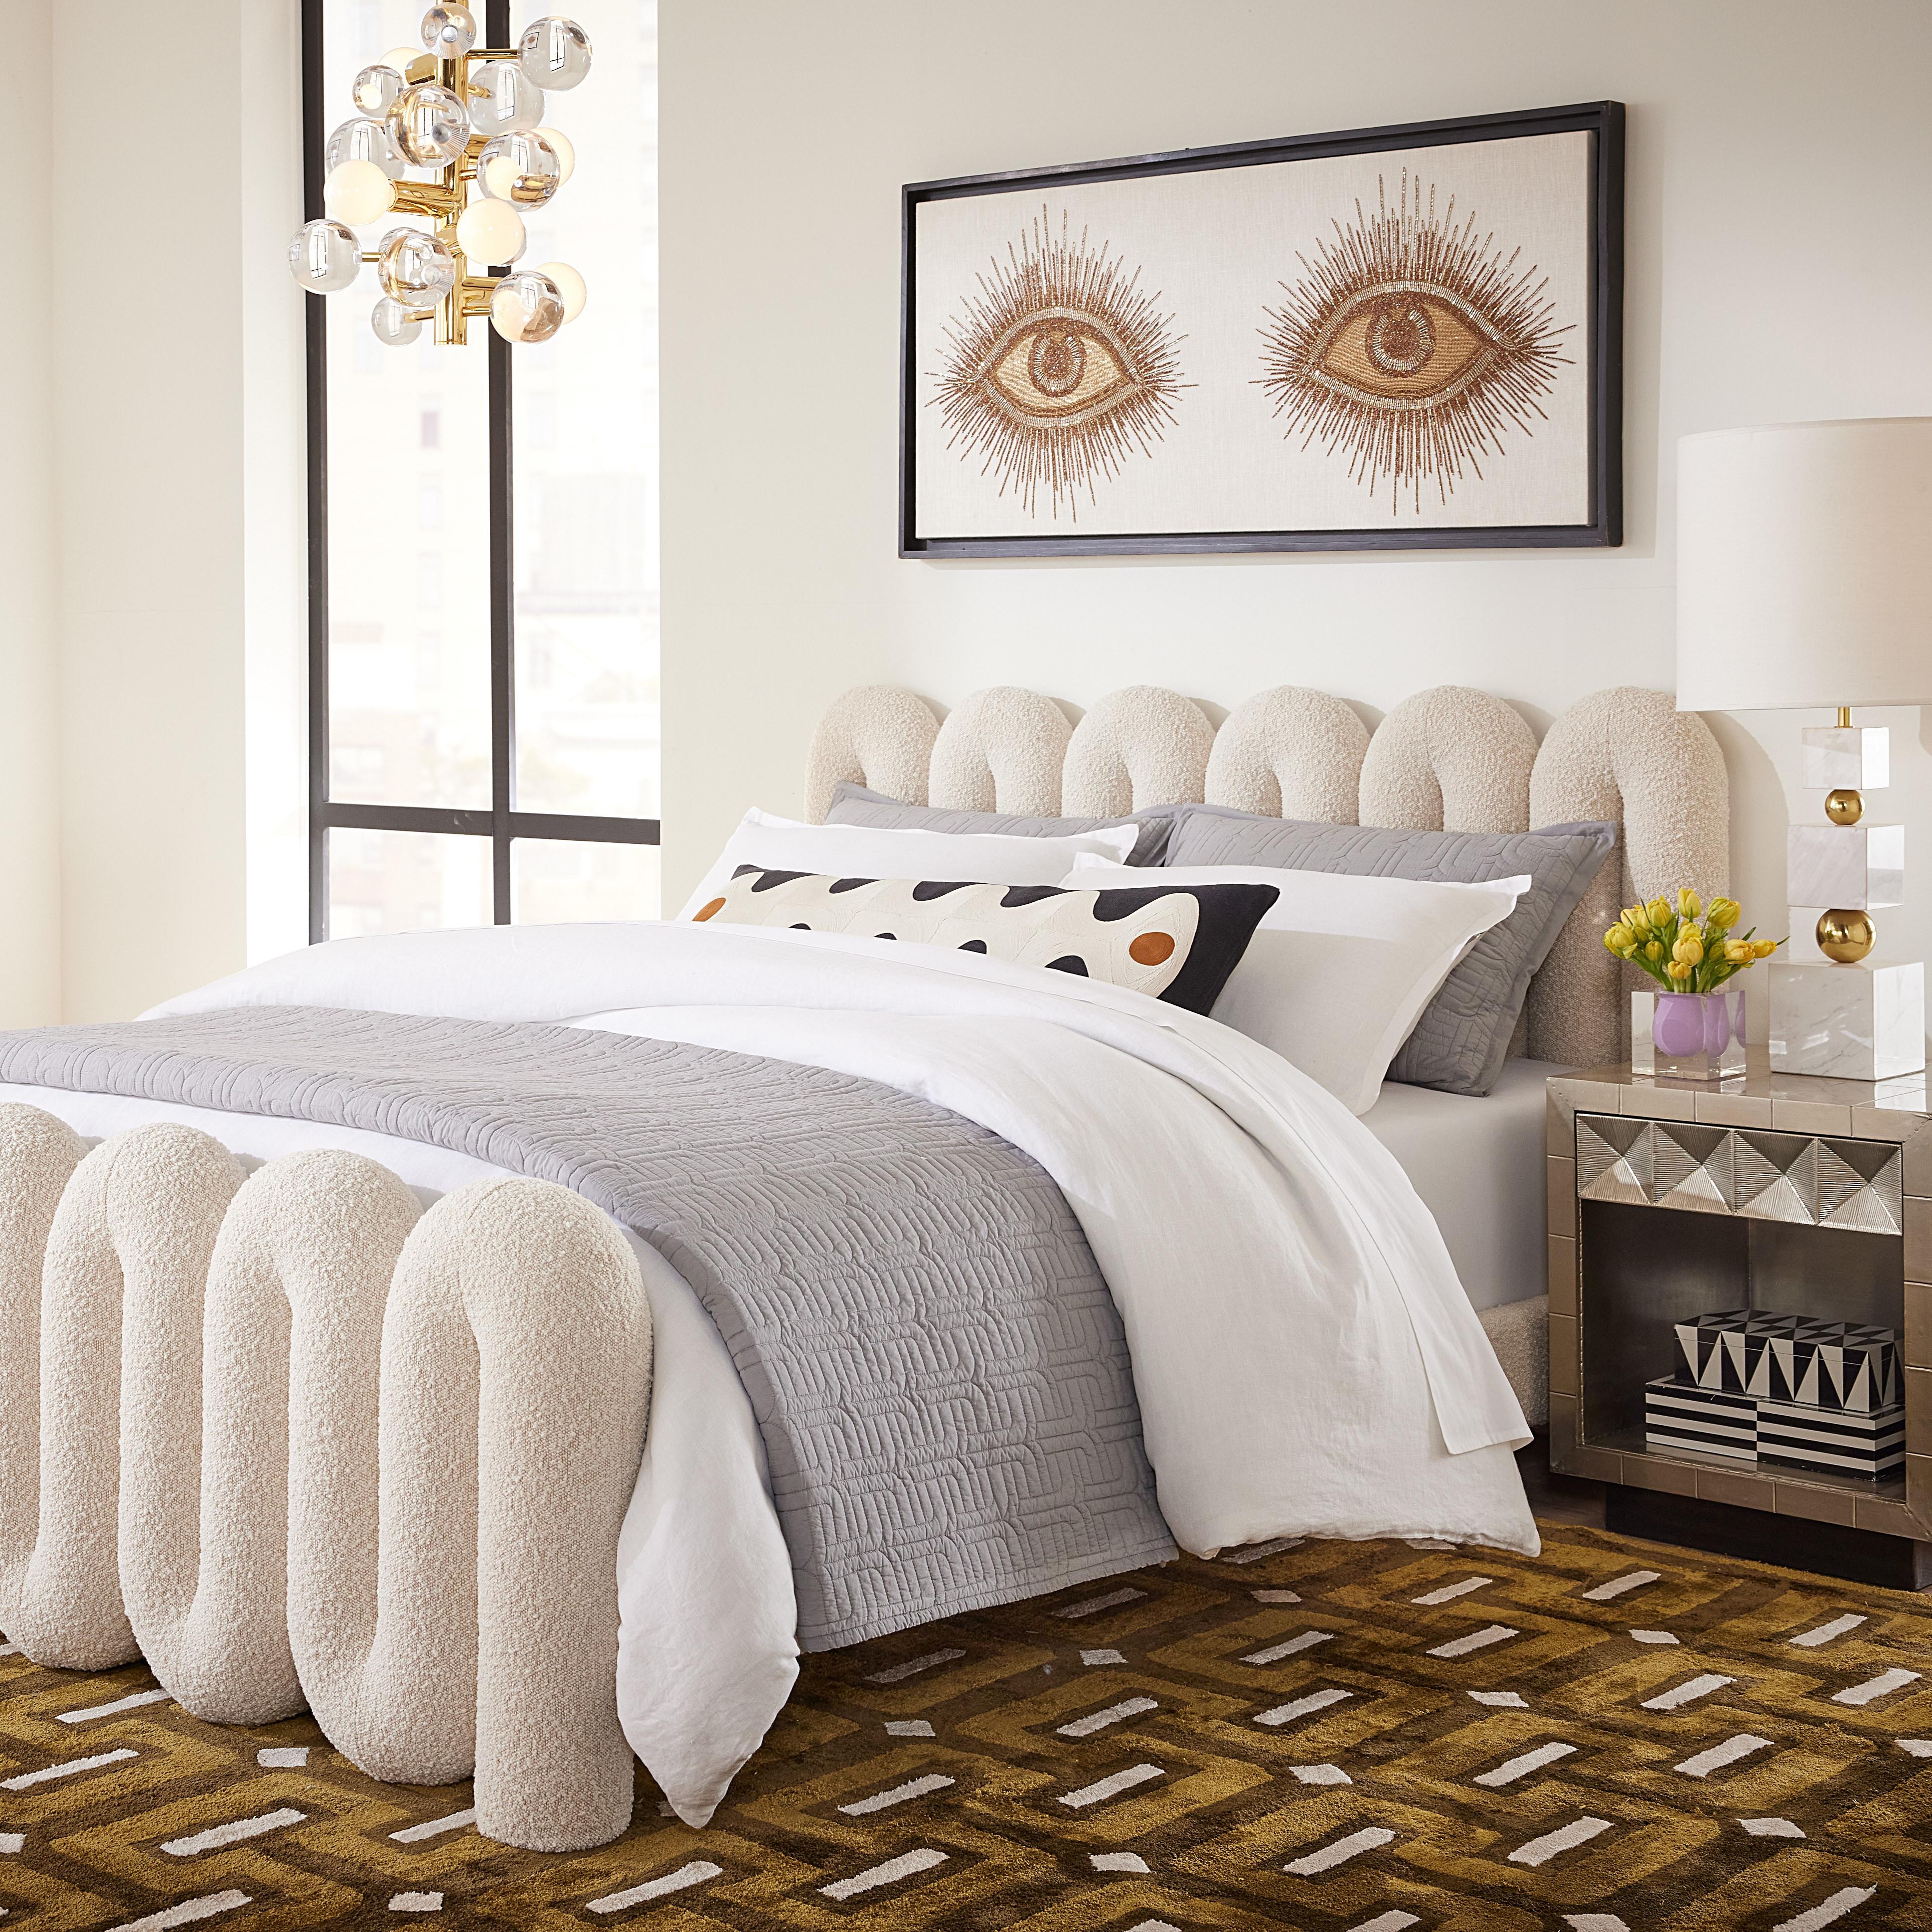 Unser Serpentine-Bett verfügt über einen ultra-modularen Rohrrahmen am Kopf- und Fußende und ist rundum mit unserem luxuriösen und strapazierfähigen Bouclé Olympus Oatmeal umhüllt - fleckenresistent und schick. Schlicht und modern, aber auch warm